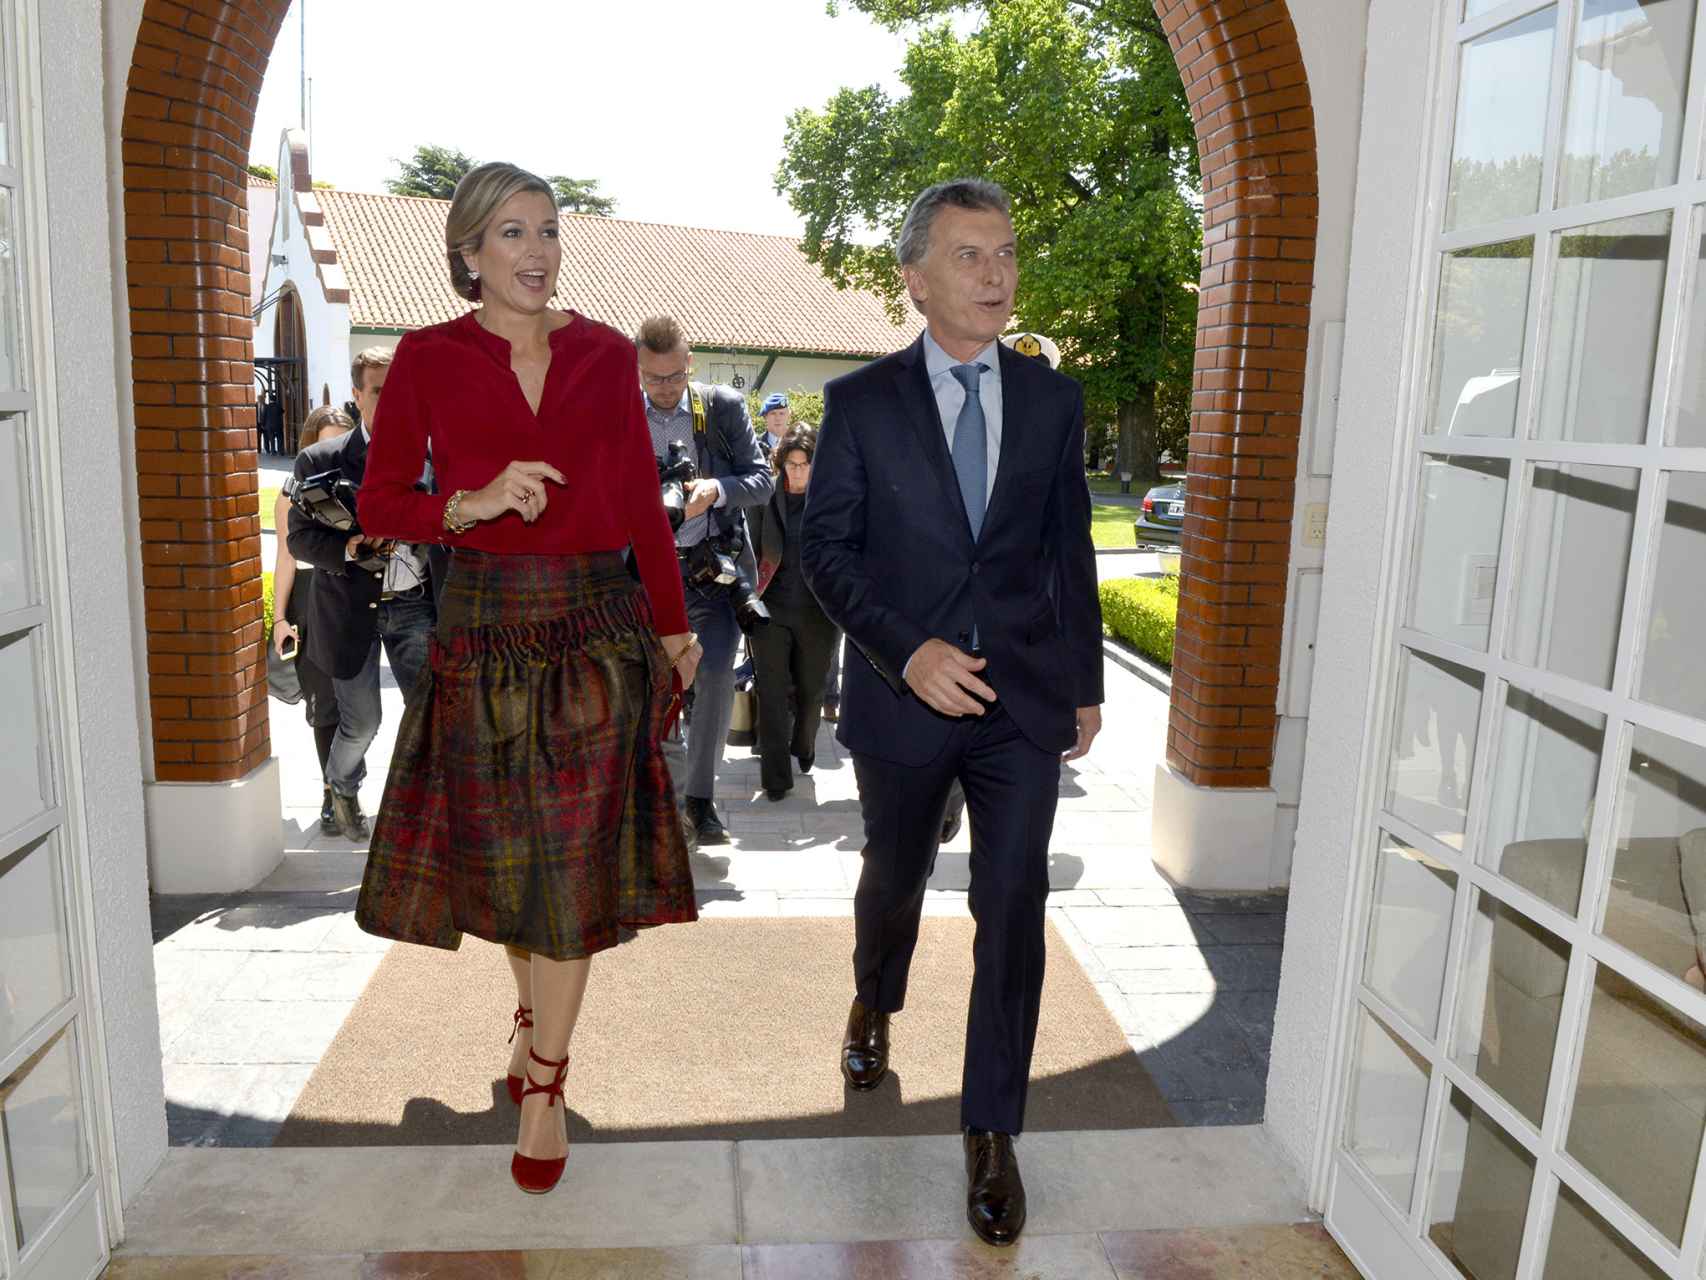 La esposa del rey Guillermo y Macri se dirigen al interior de la residencia presidencial.